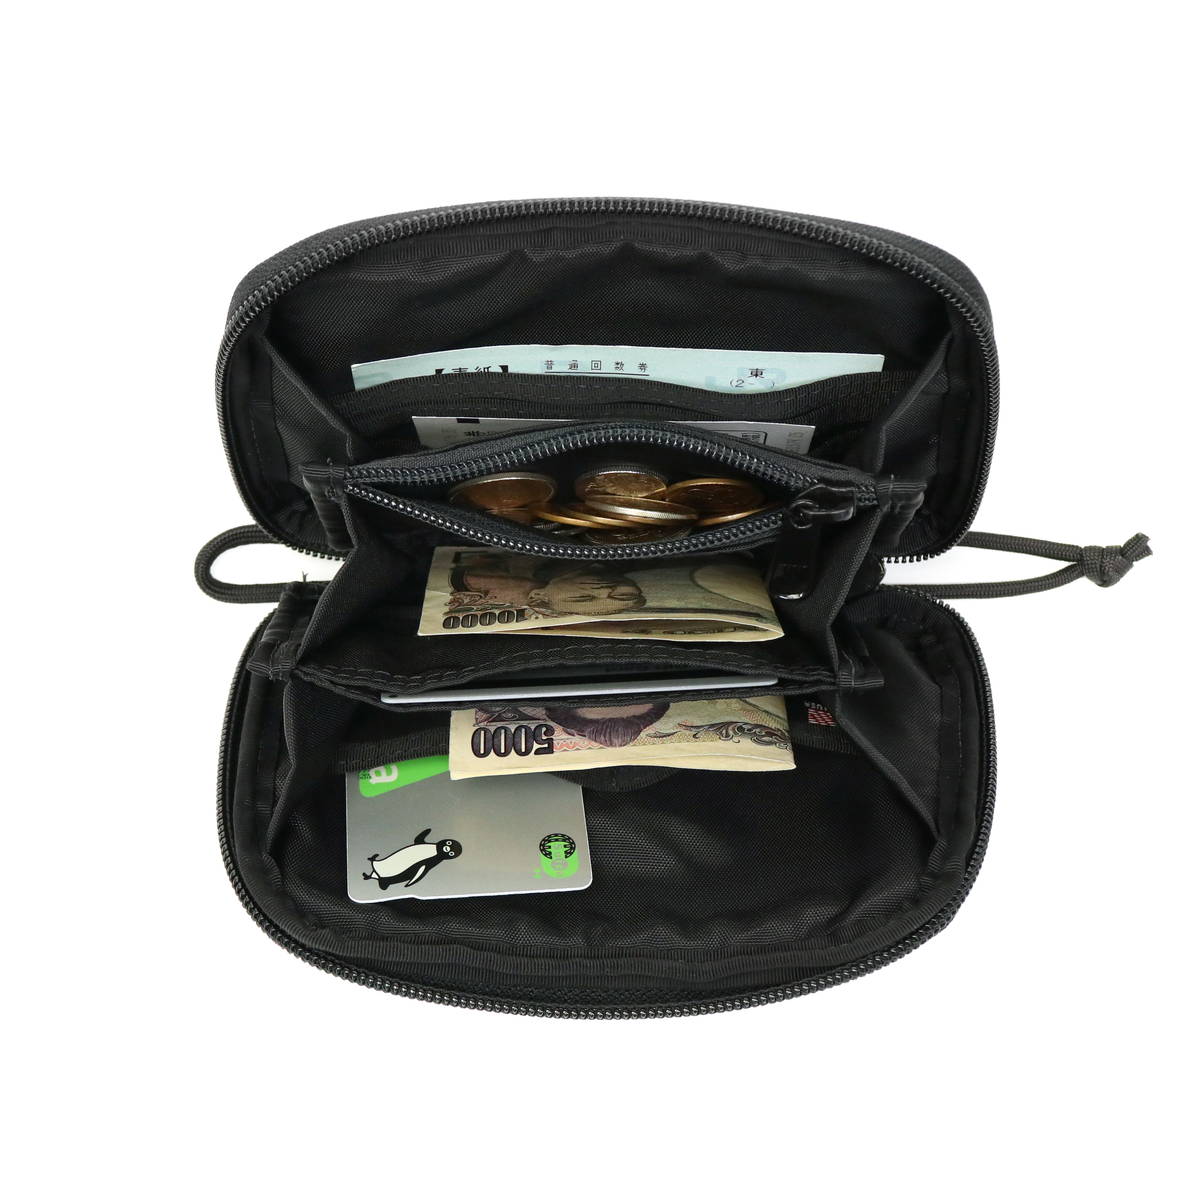 9009円 ブランド雑貨総合 ブリーフィング 財布 二つ折り財布 メンズ ラウンドファスナー BRIEFING USA BRM181601